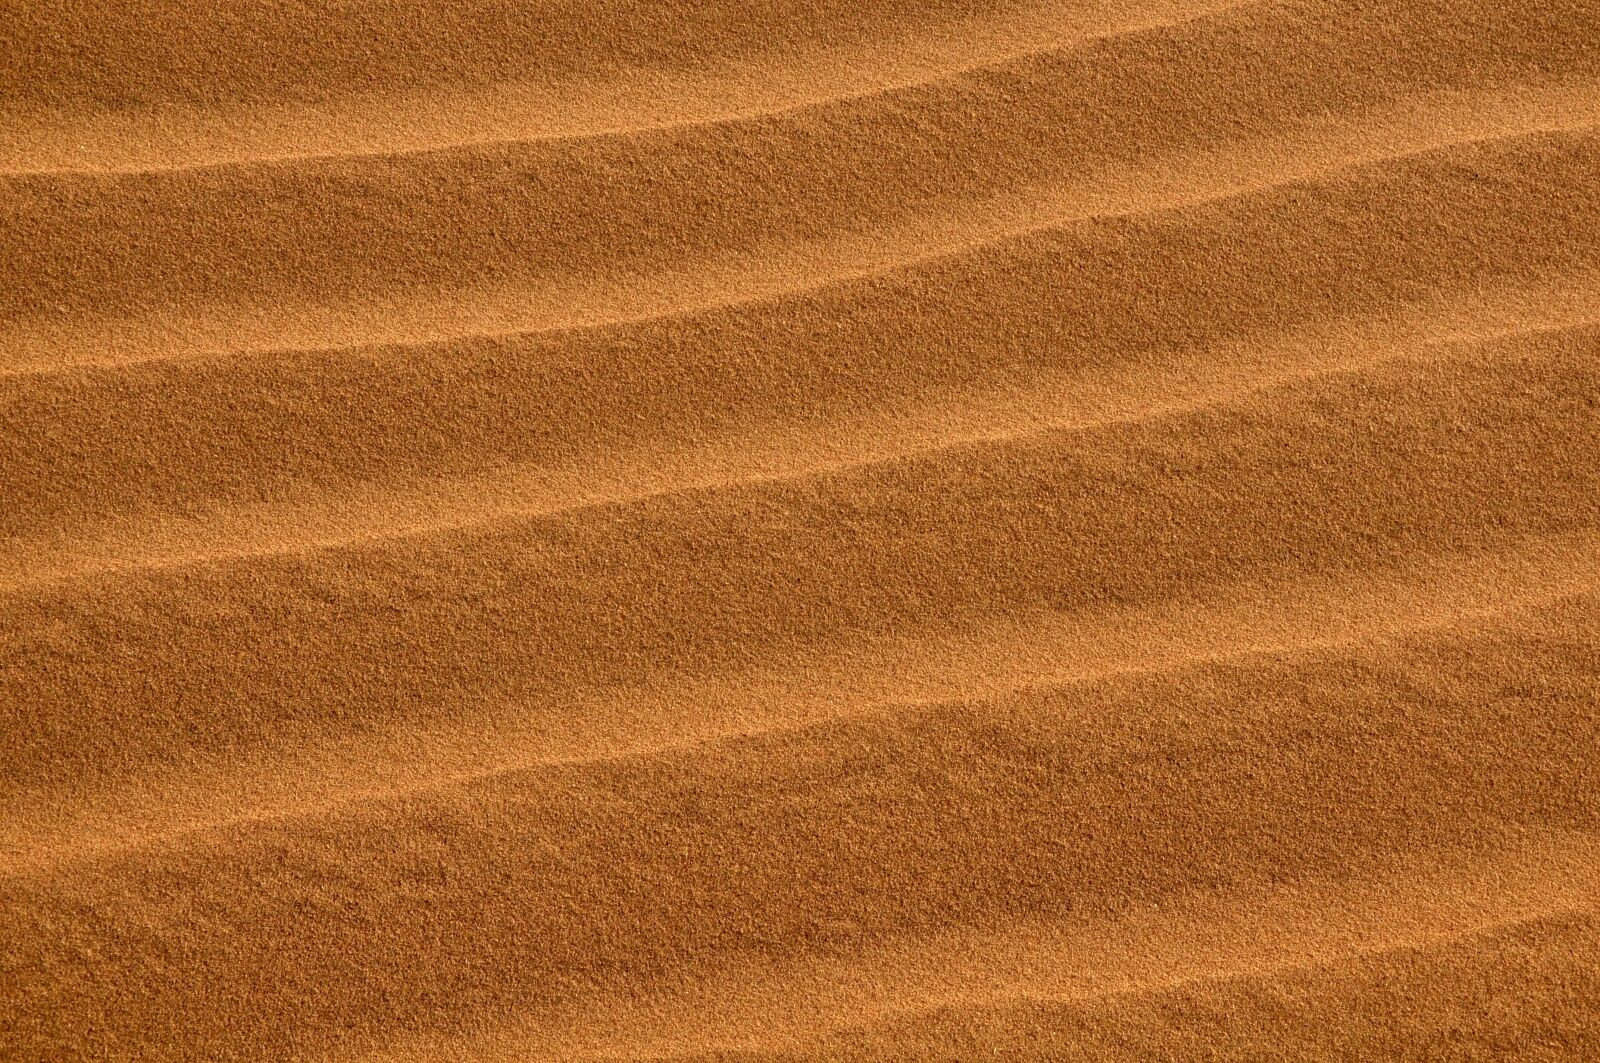 Nikon D90 sample photo. Dunes, sand, texture photography